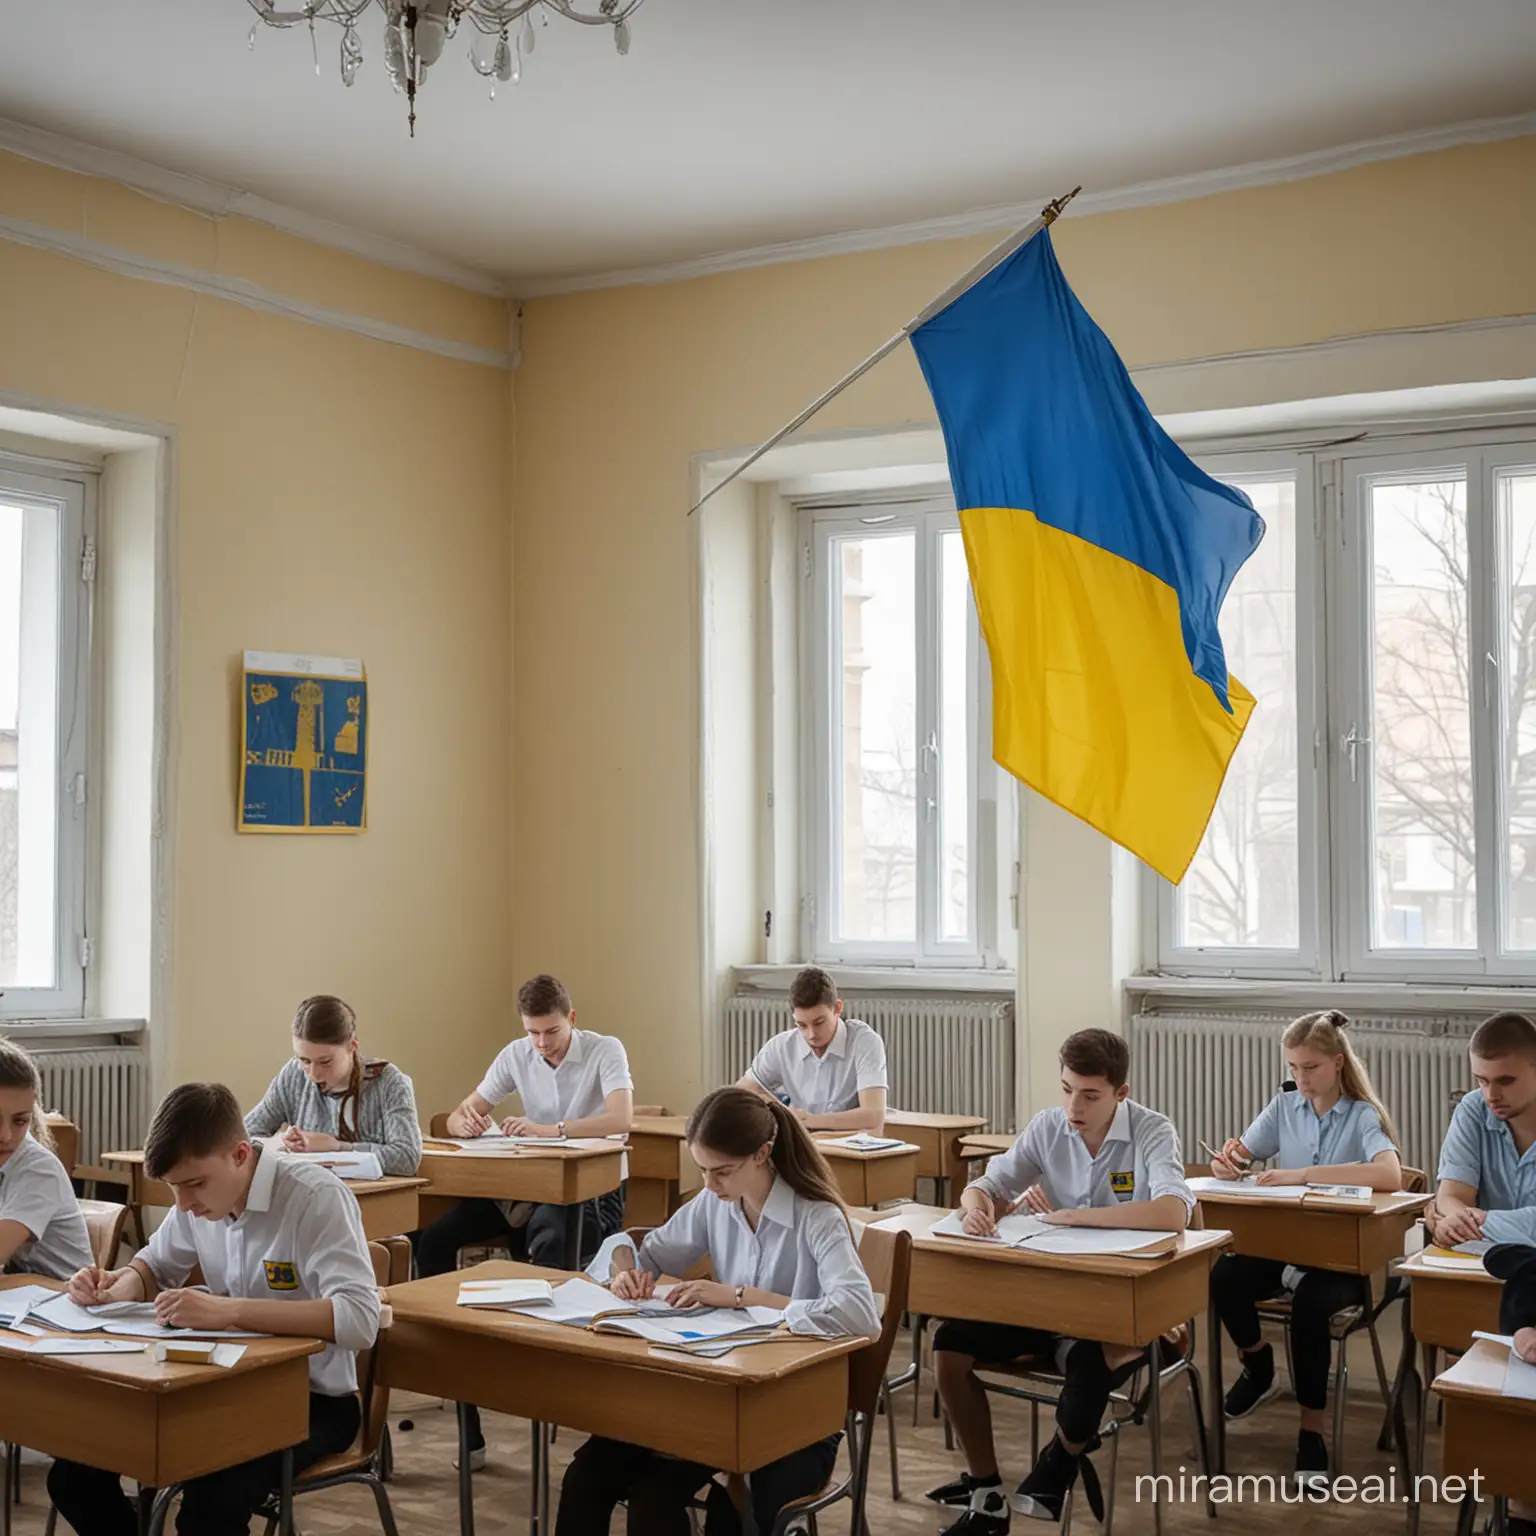 Ukrainische Schüler in einem Klassenzimmer, an der Wand hängt die ukrainische Flagge